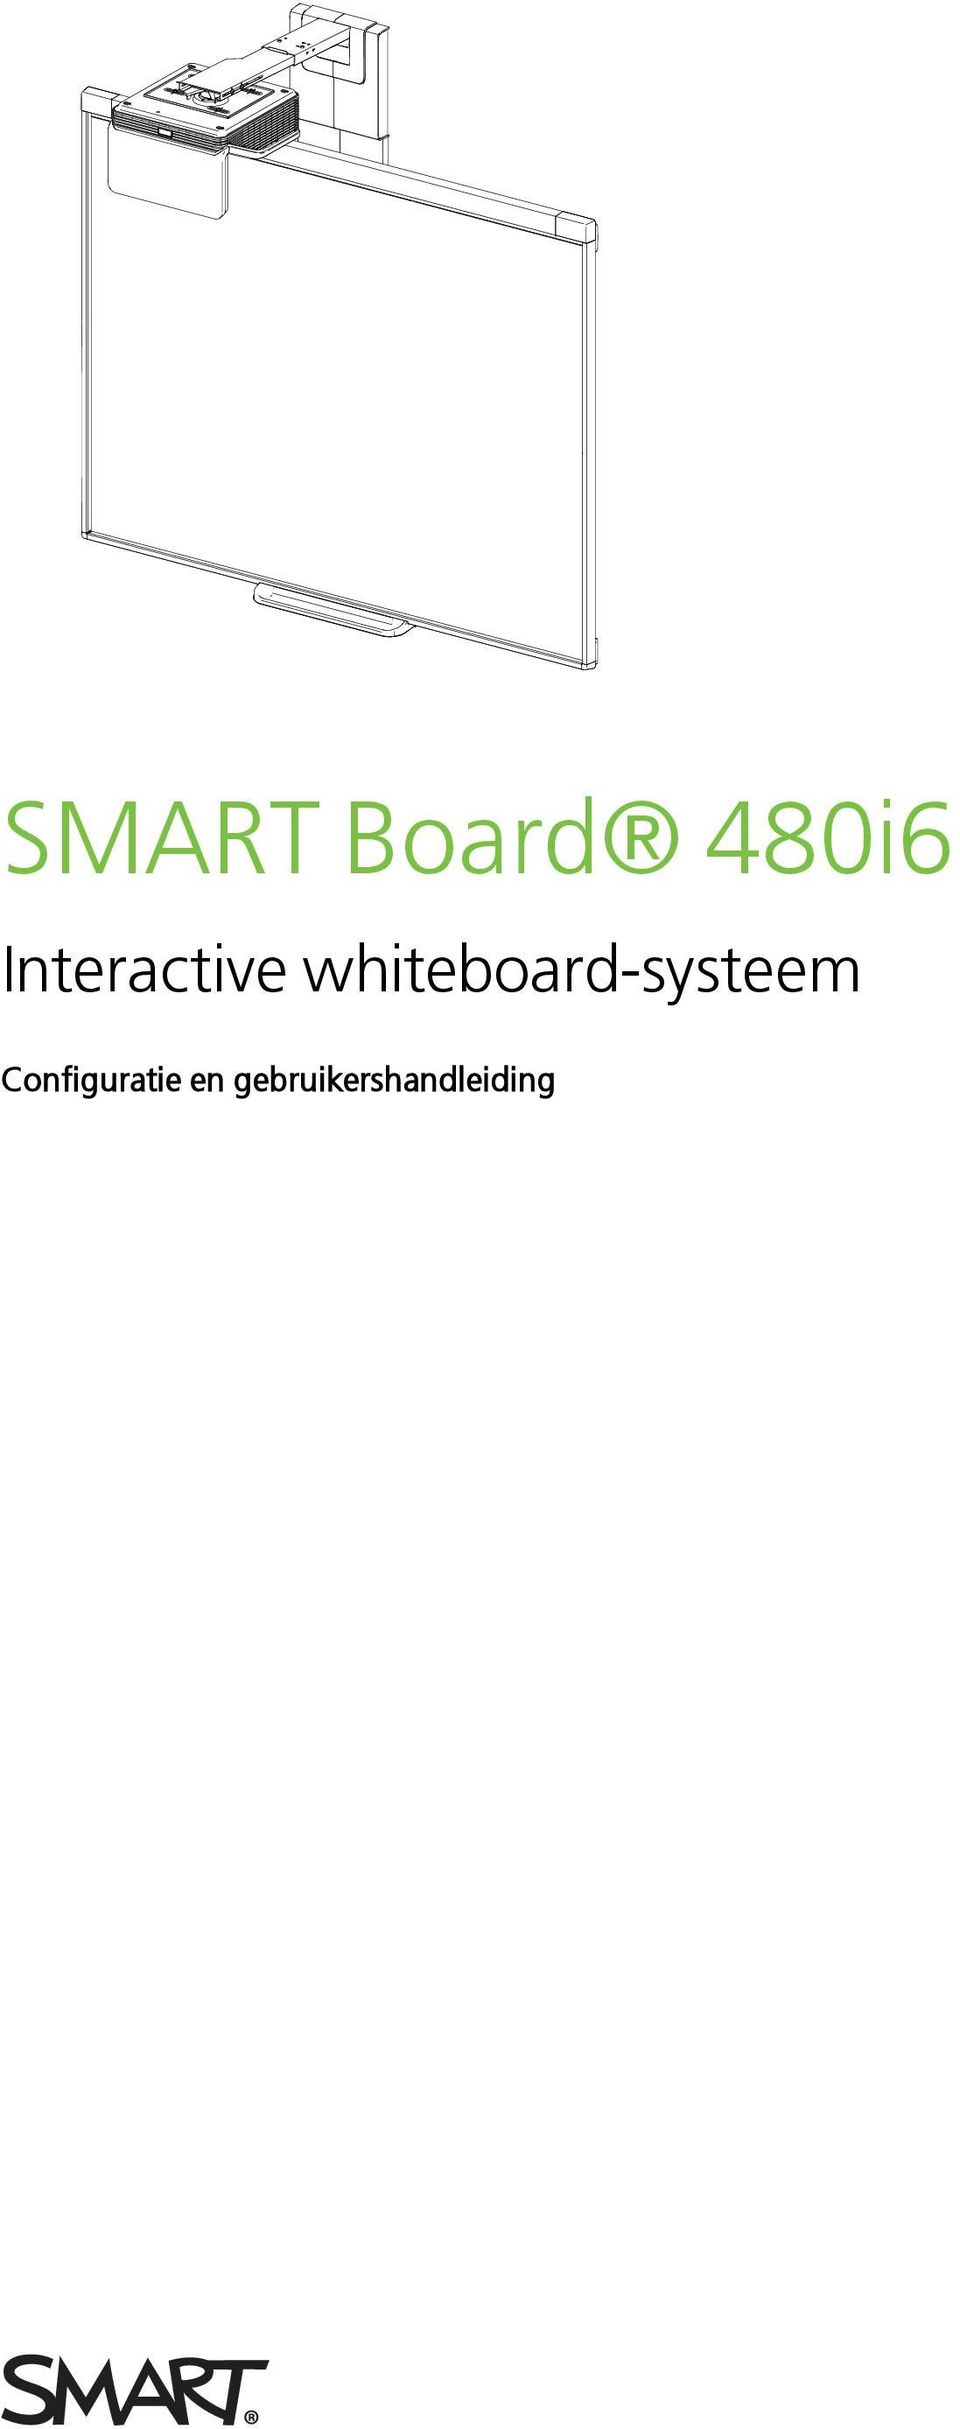 whiteboard-systeem